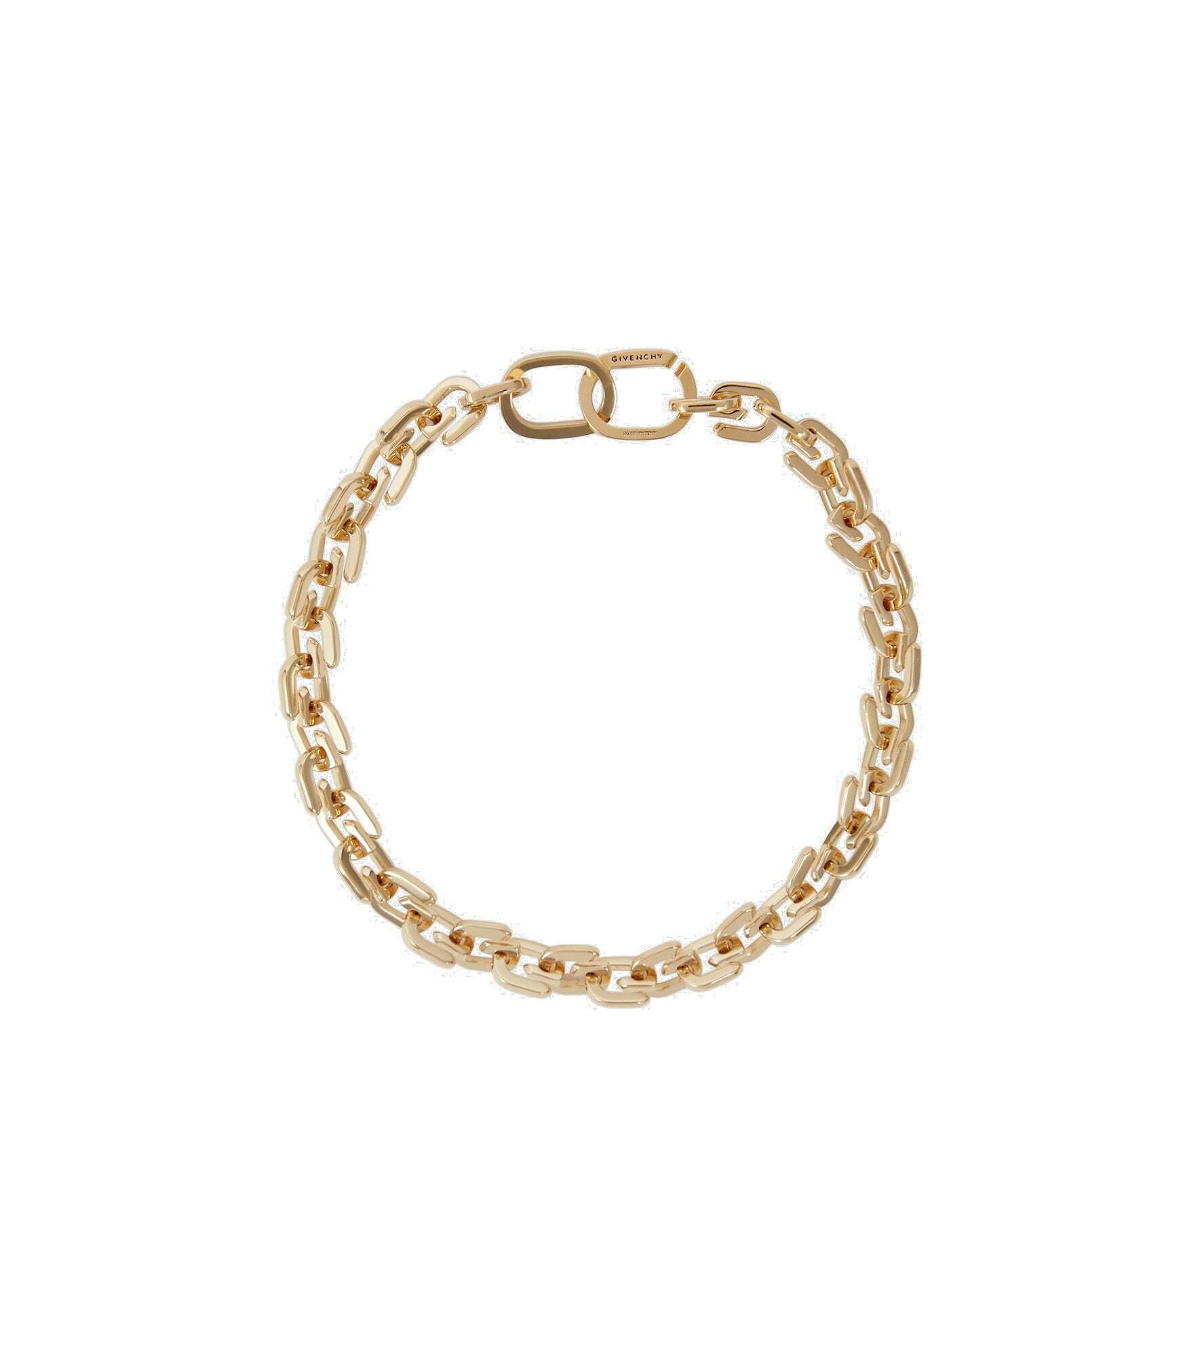 Givenchy - G-link gold-tone bracelet Givenchy